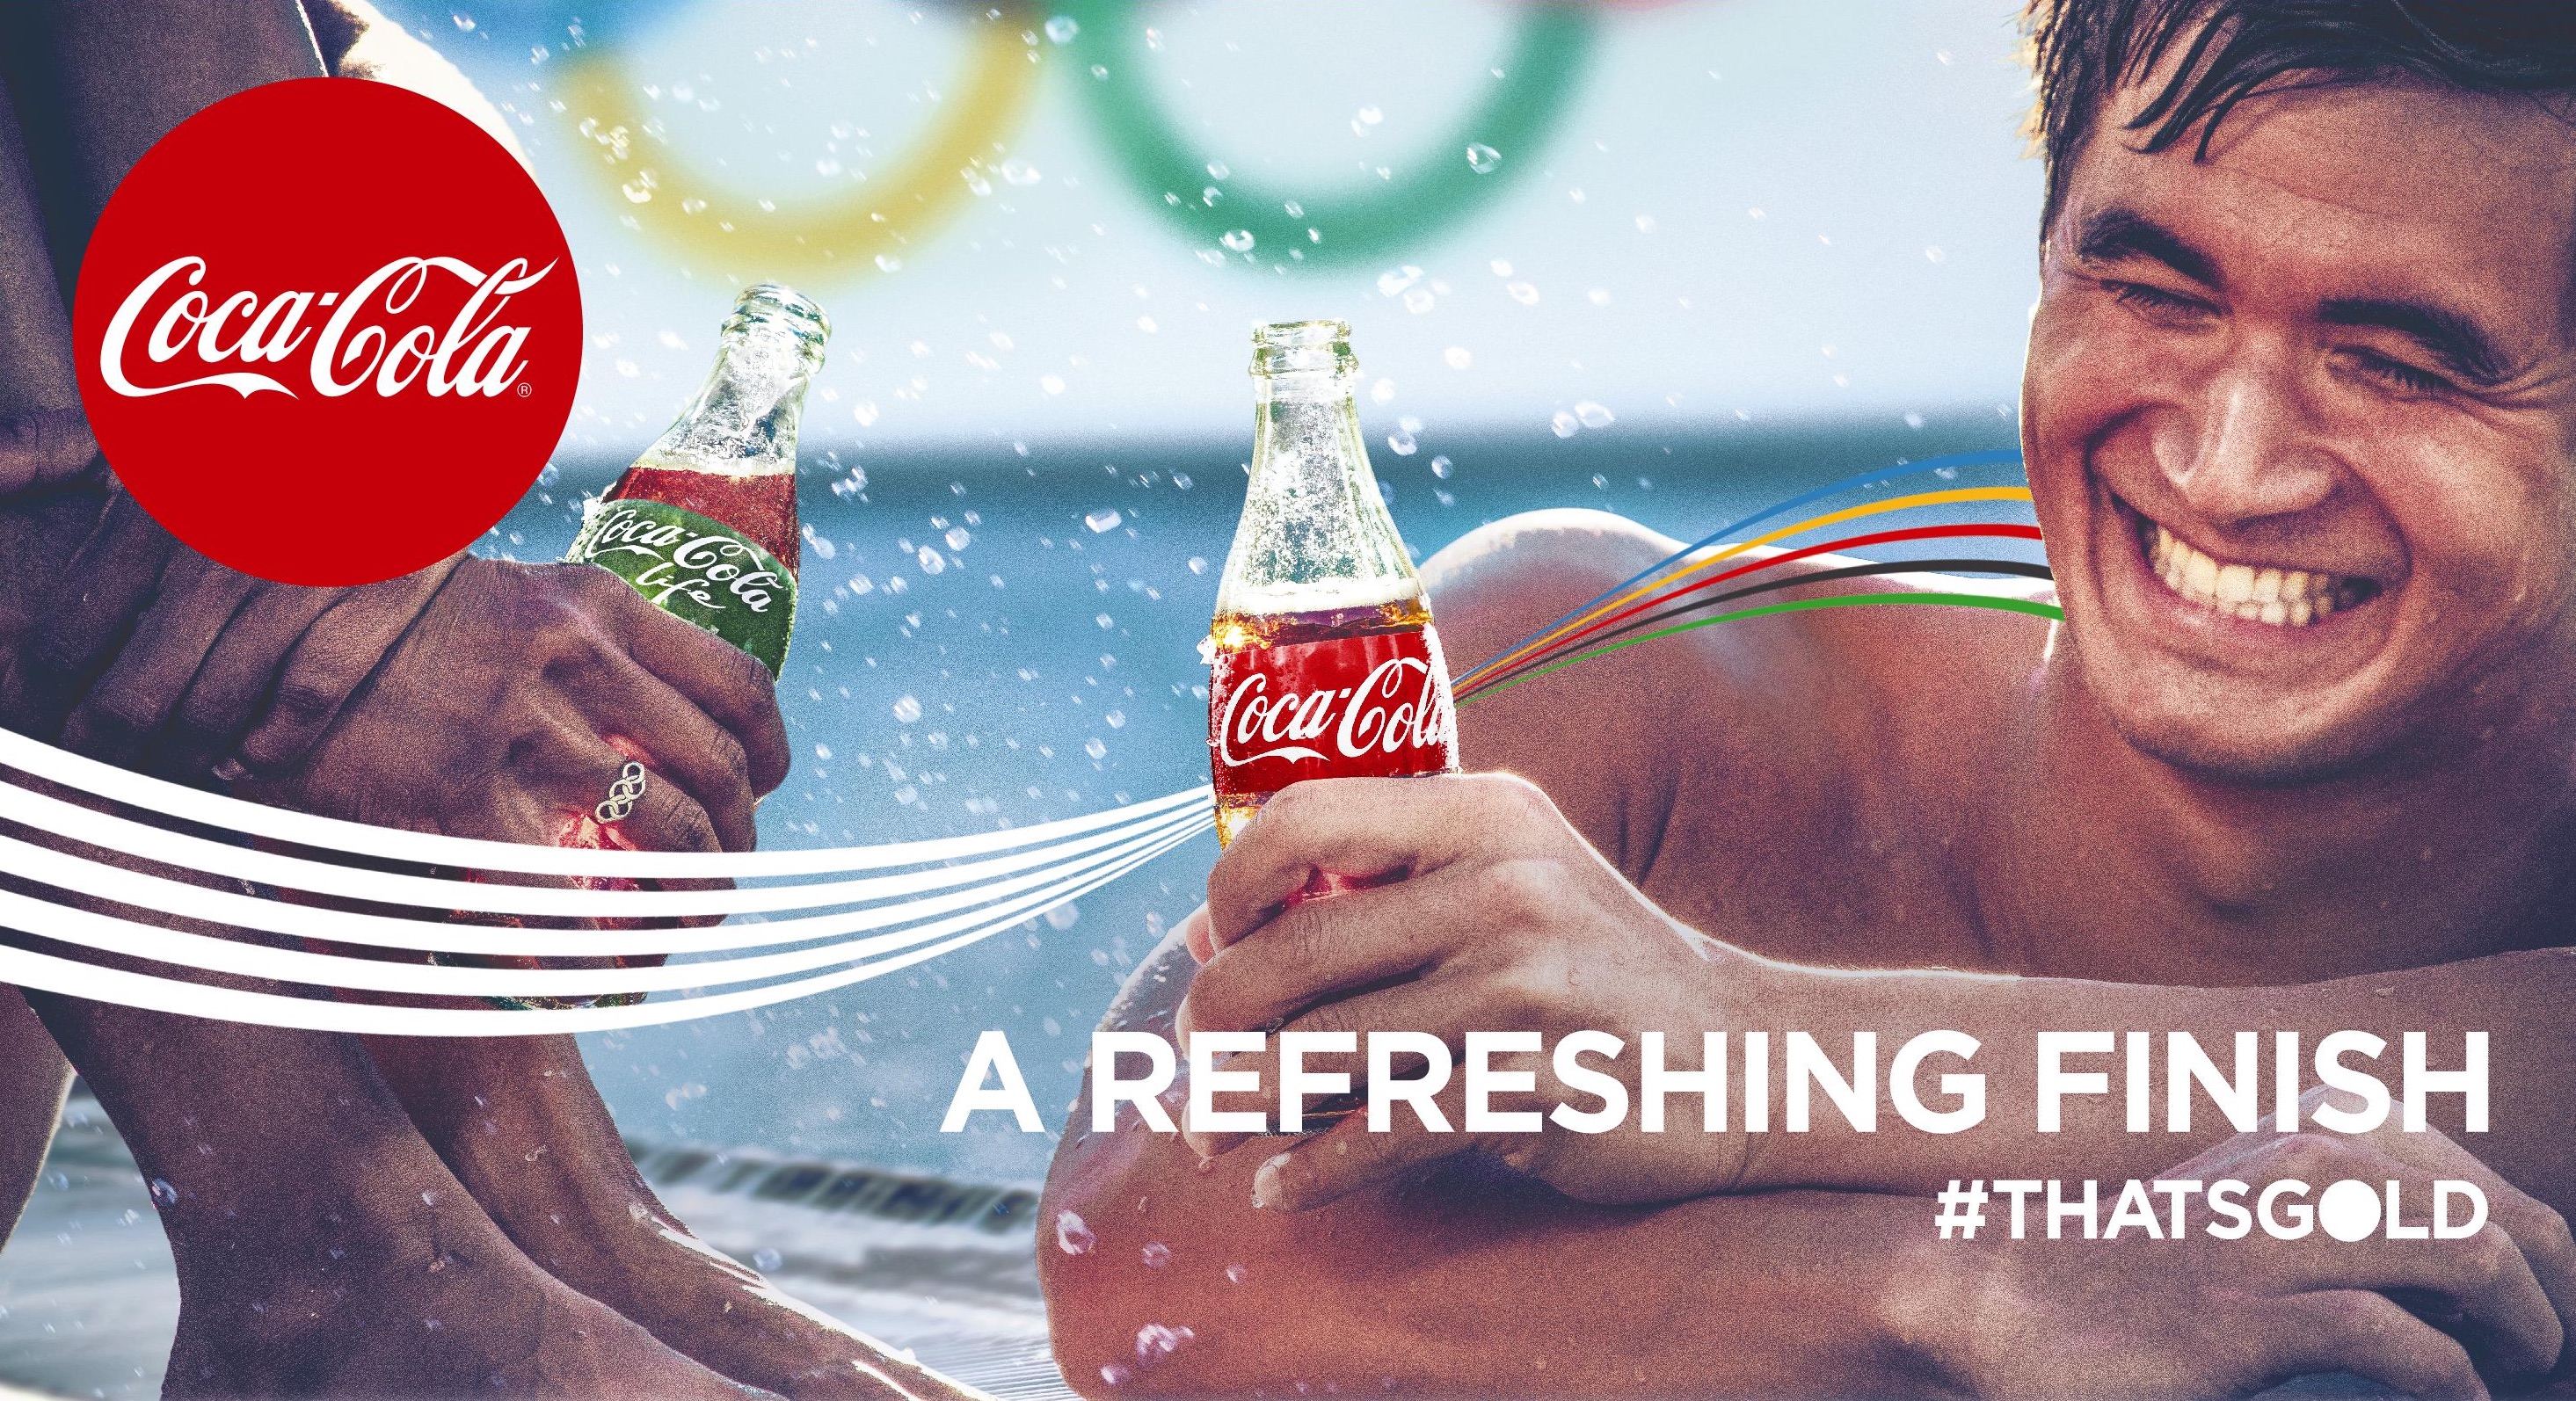 Nathan Adrian, nadador del equipo de Estados Unidos en la campaña #ThatsGold. Foto: The Coca-Cola Company.